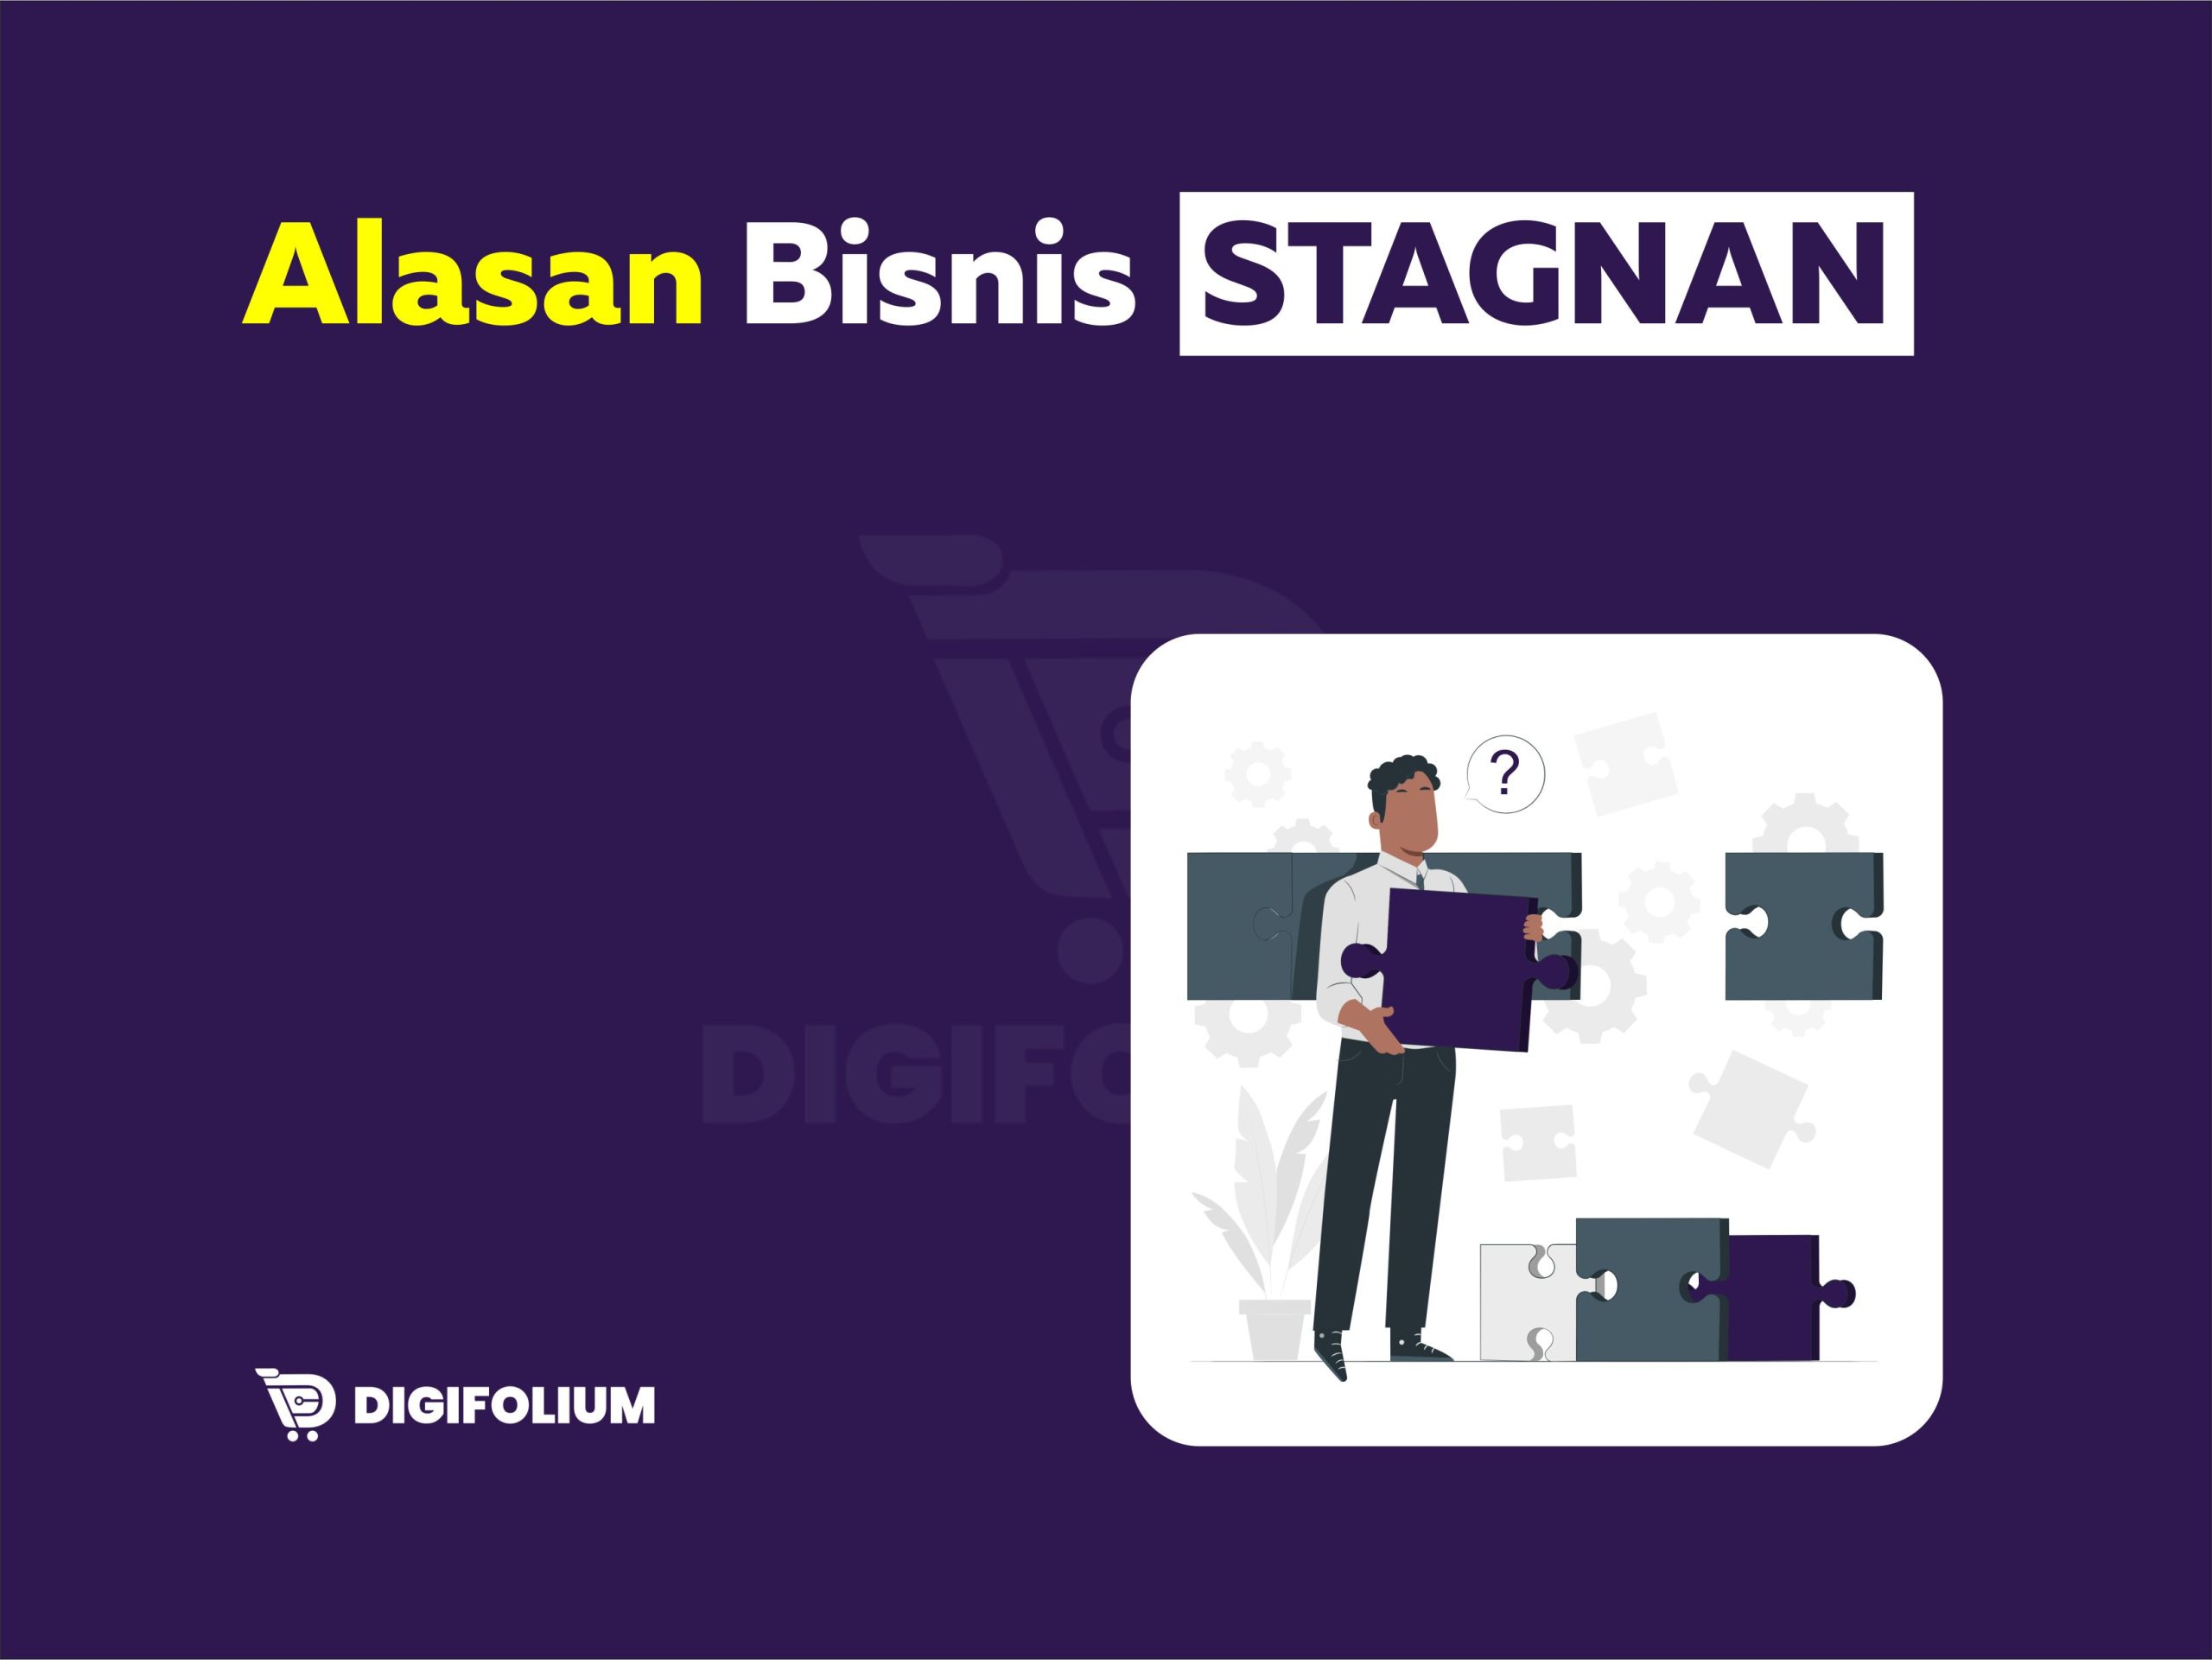 Alasan Bisnis Stagnan